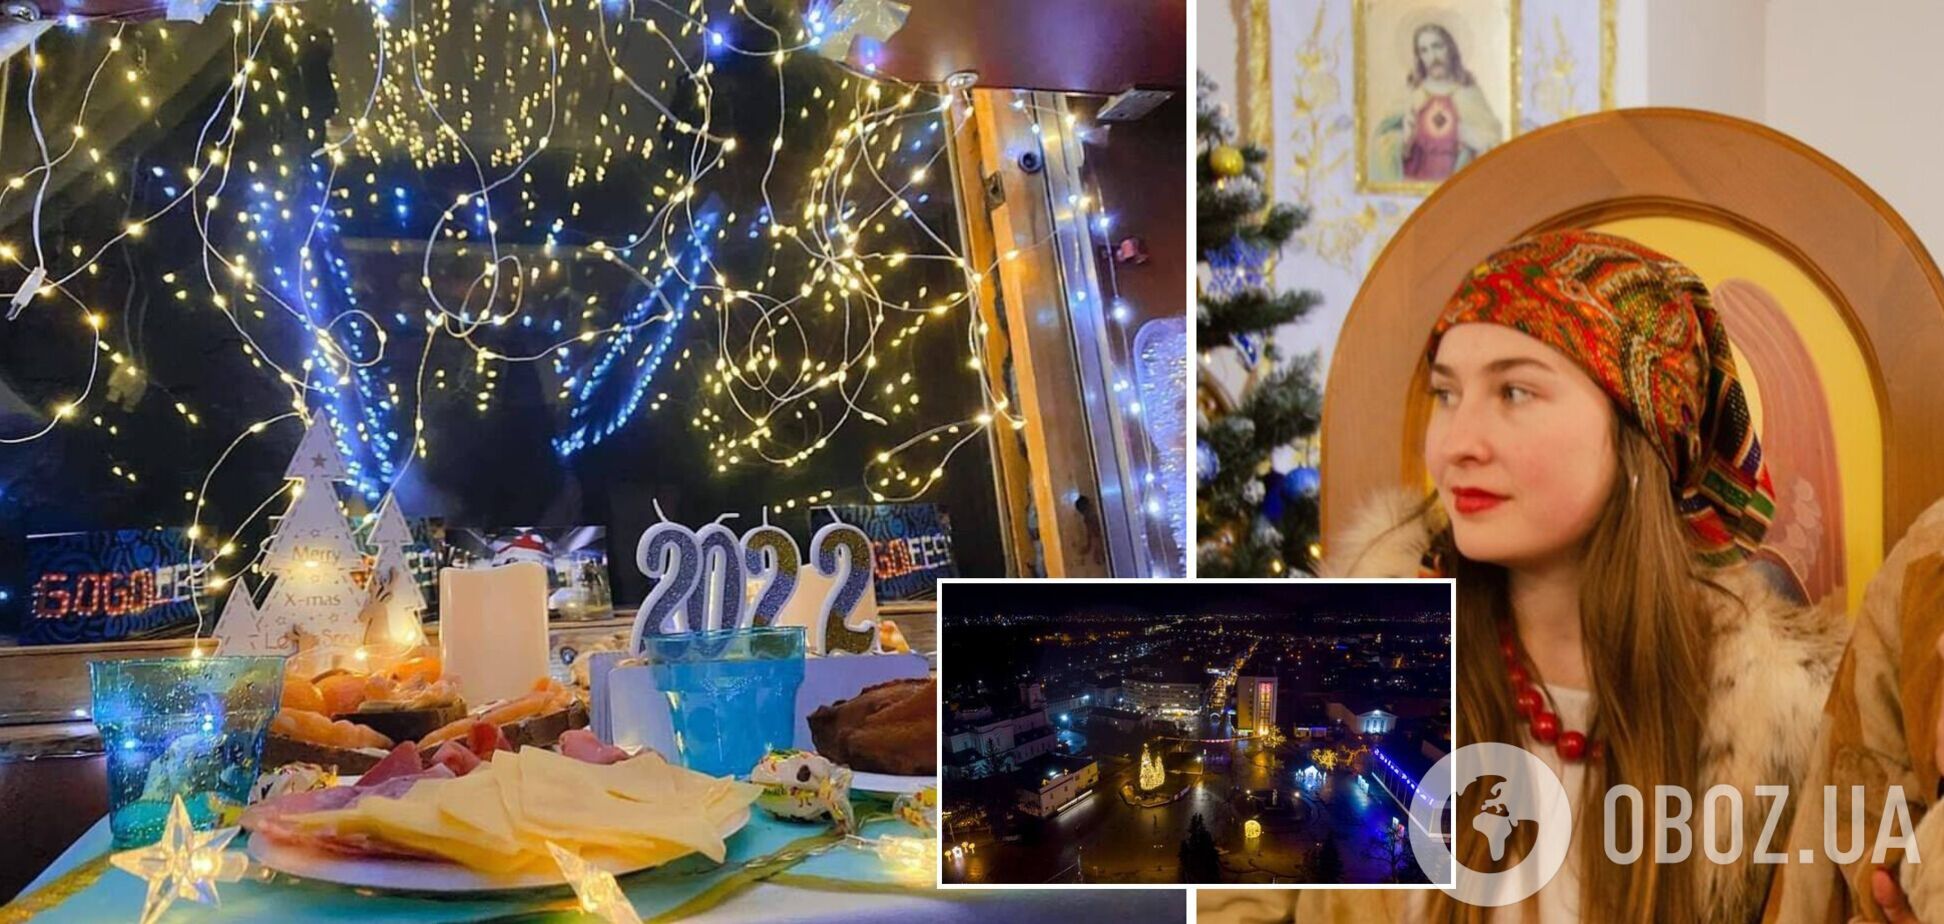 Багато привітань та яскраві інсталяції: як Україна відзначила Різдво 2022. Фото та відео